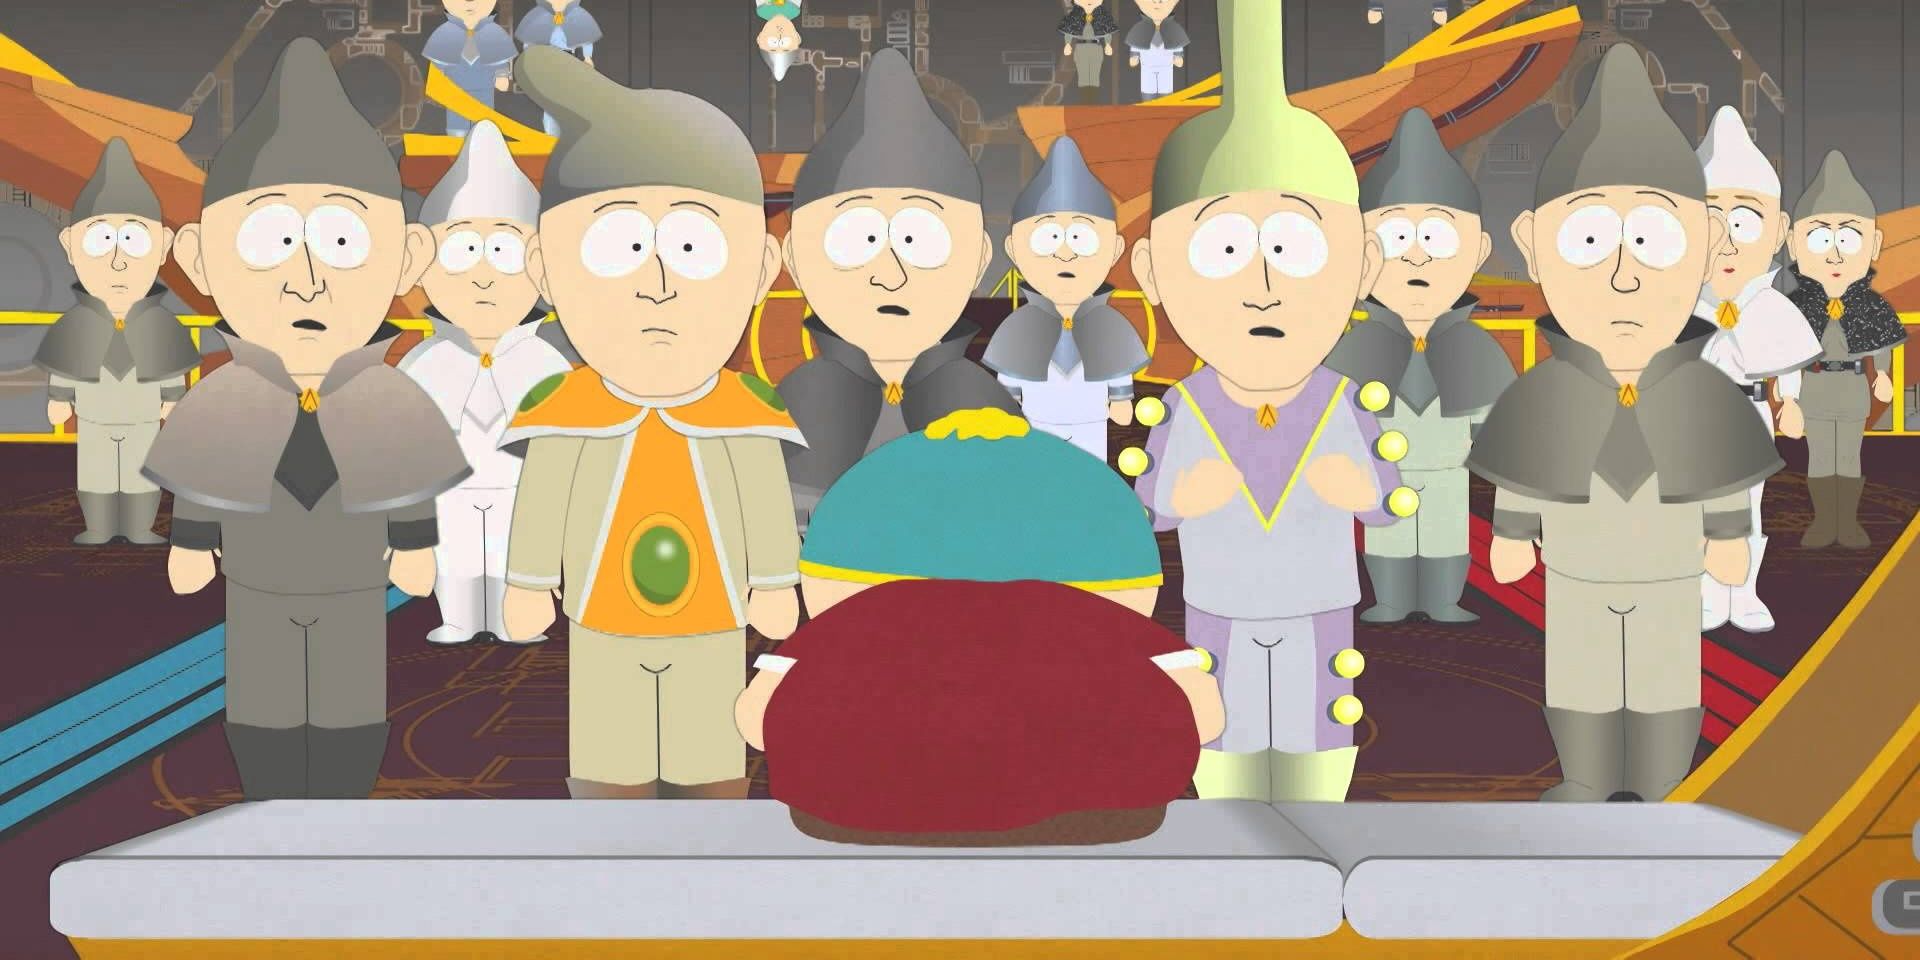 Go God Go, a South Park episode